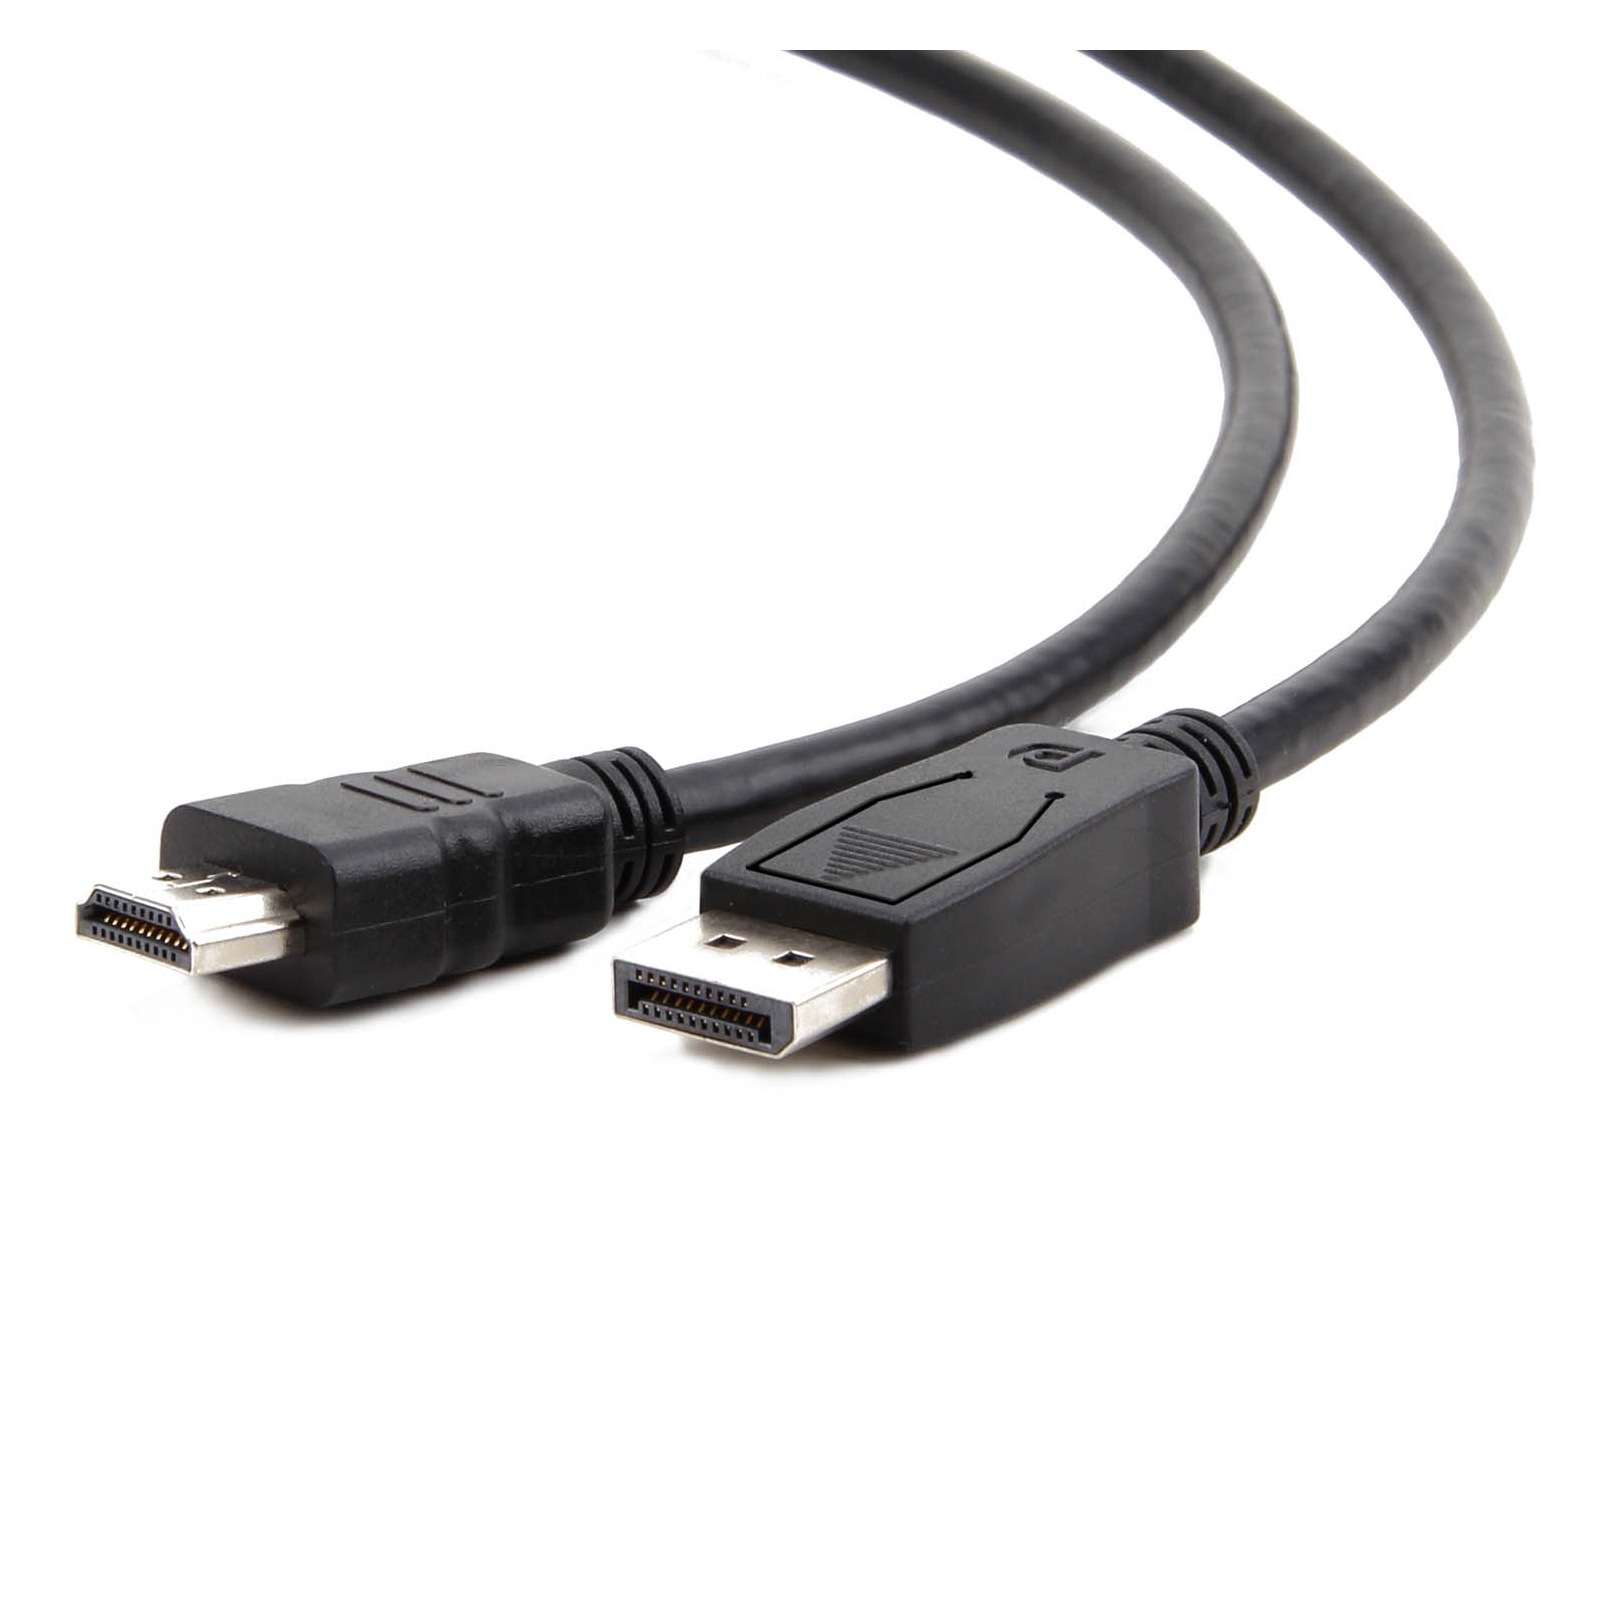 Кабель мультимедийный Display Port to HDMI 7.5m Cablexpert (CC-DP-HDMI-7.5M) изображение 2